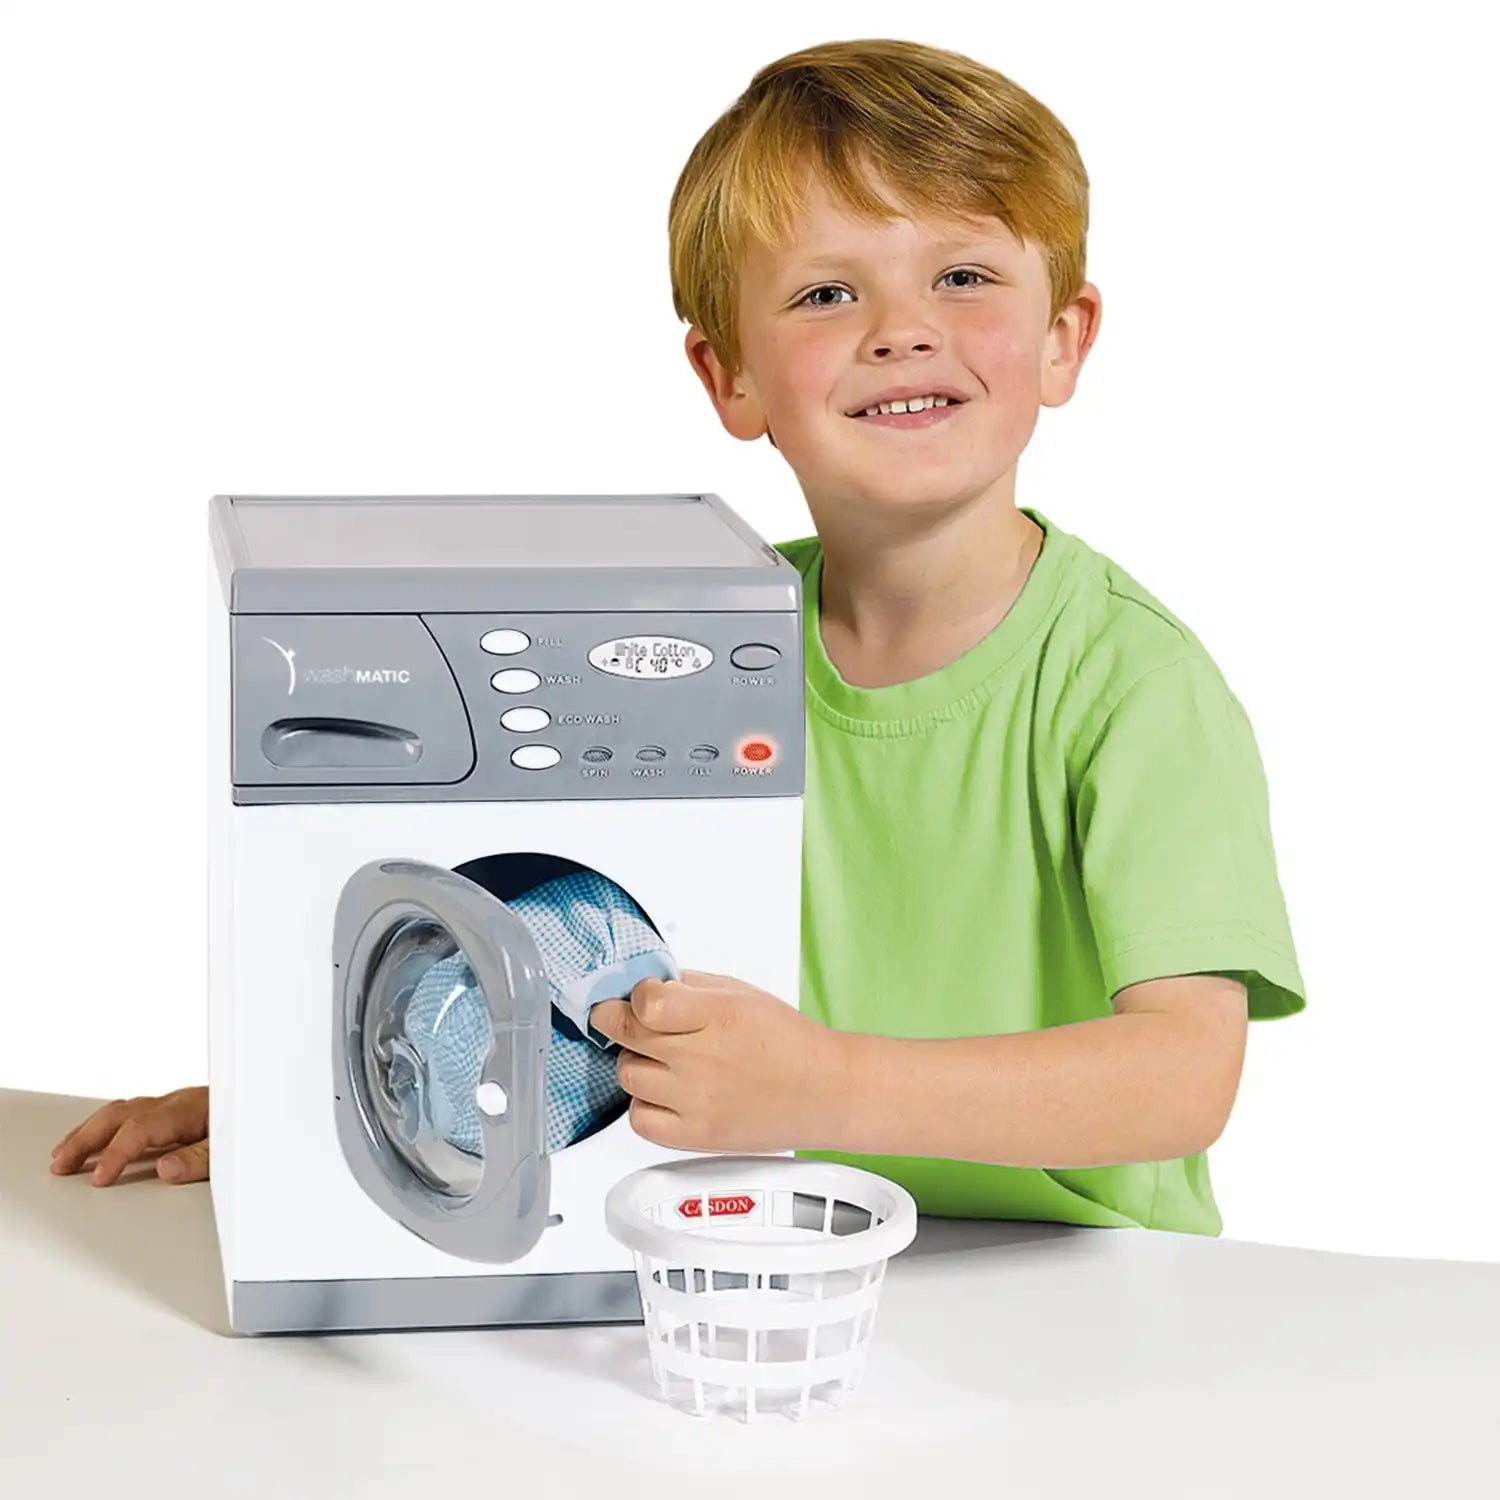 Casdon - Electronic Washer Toy